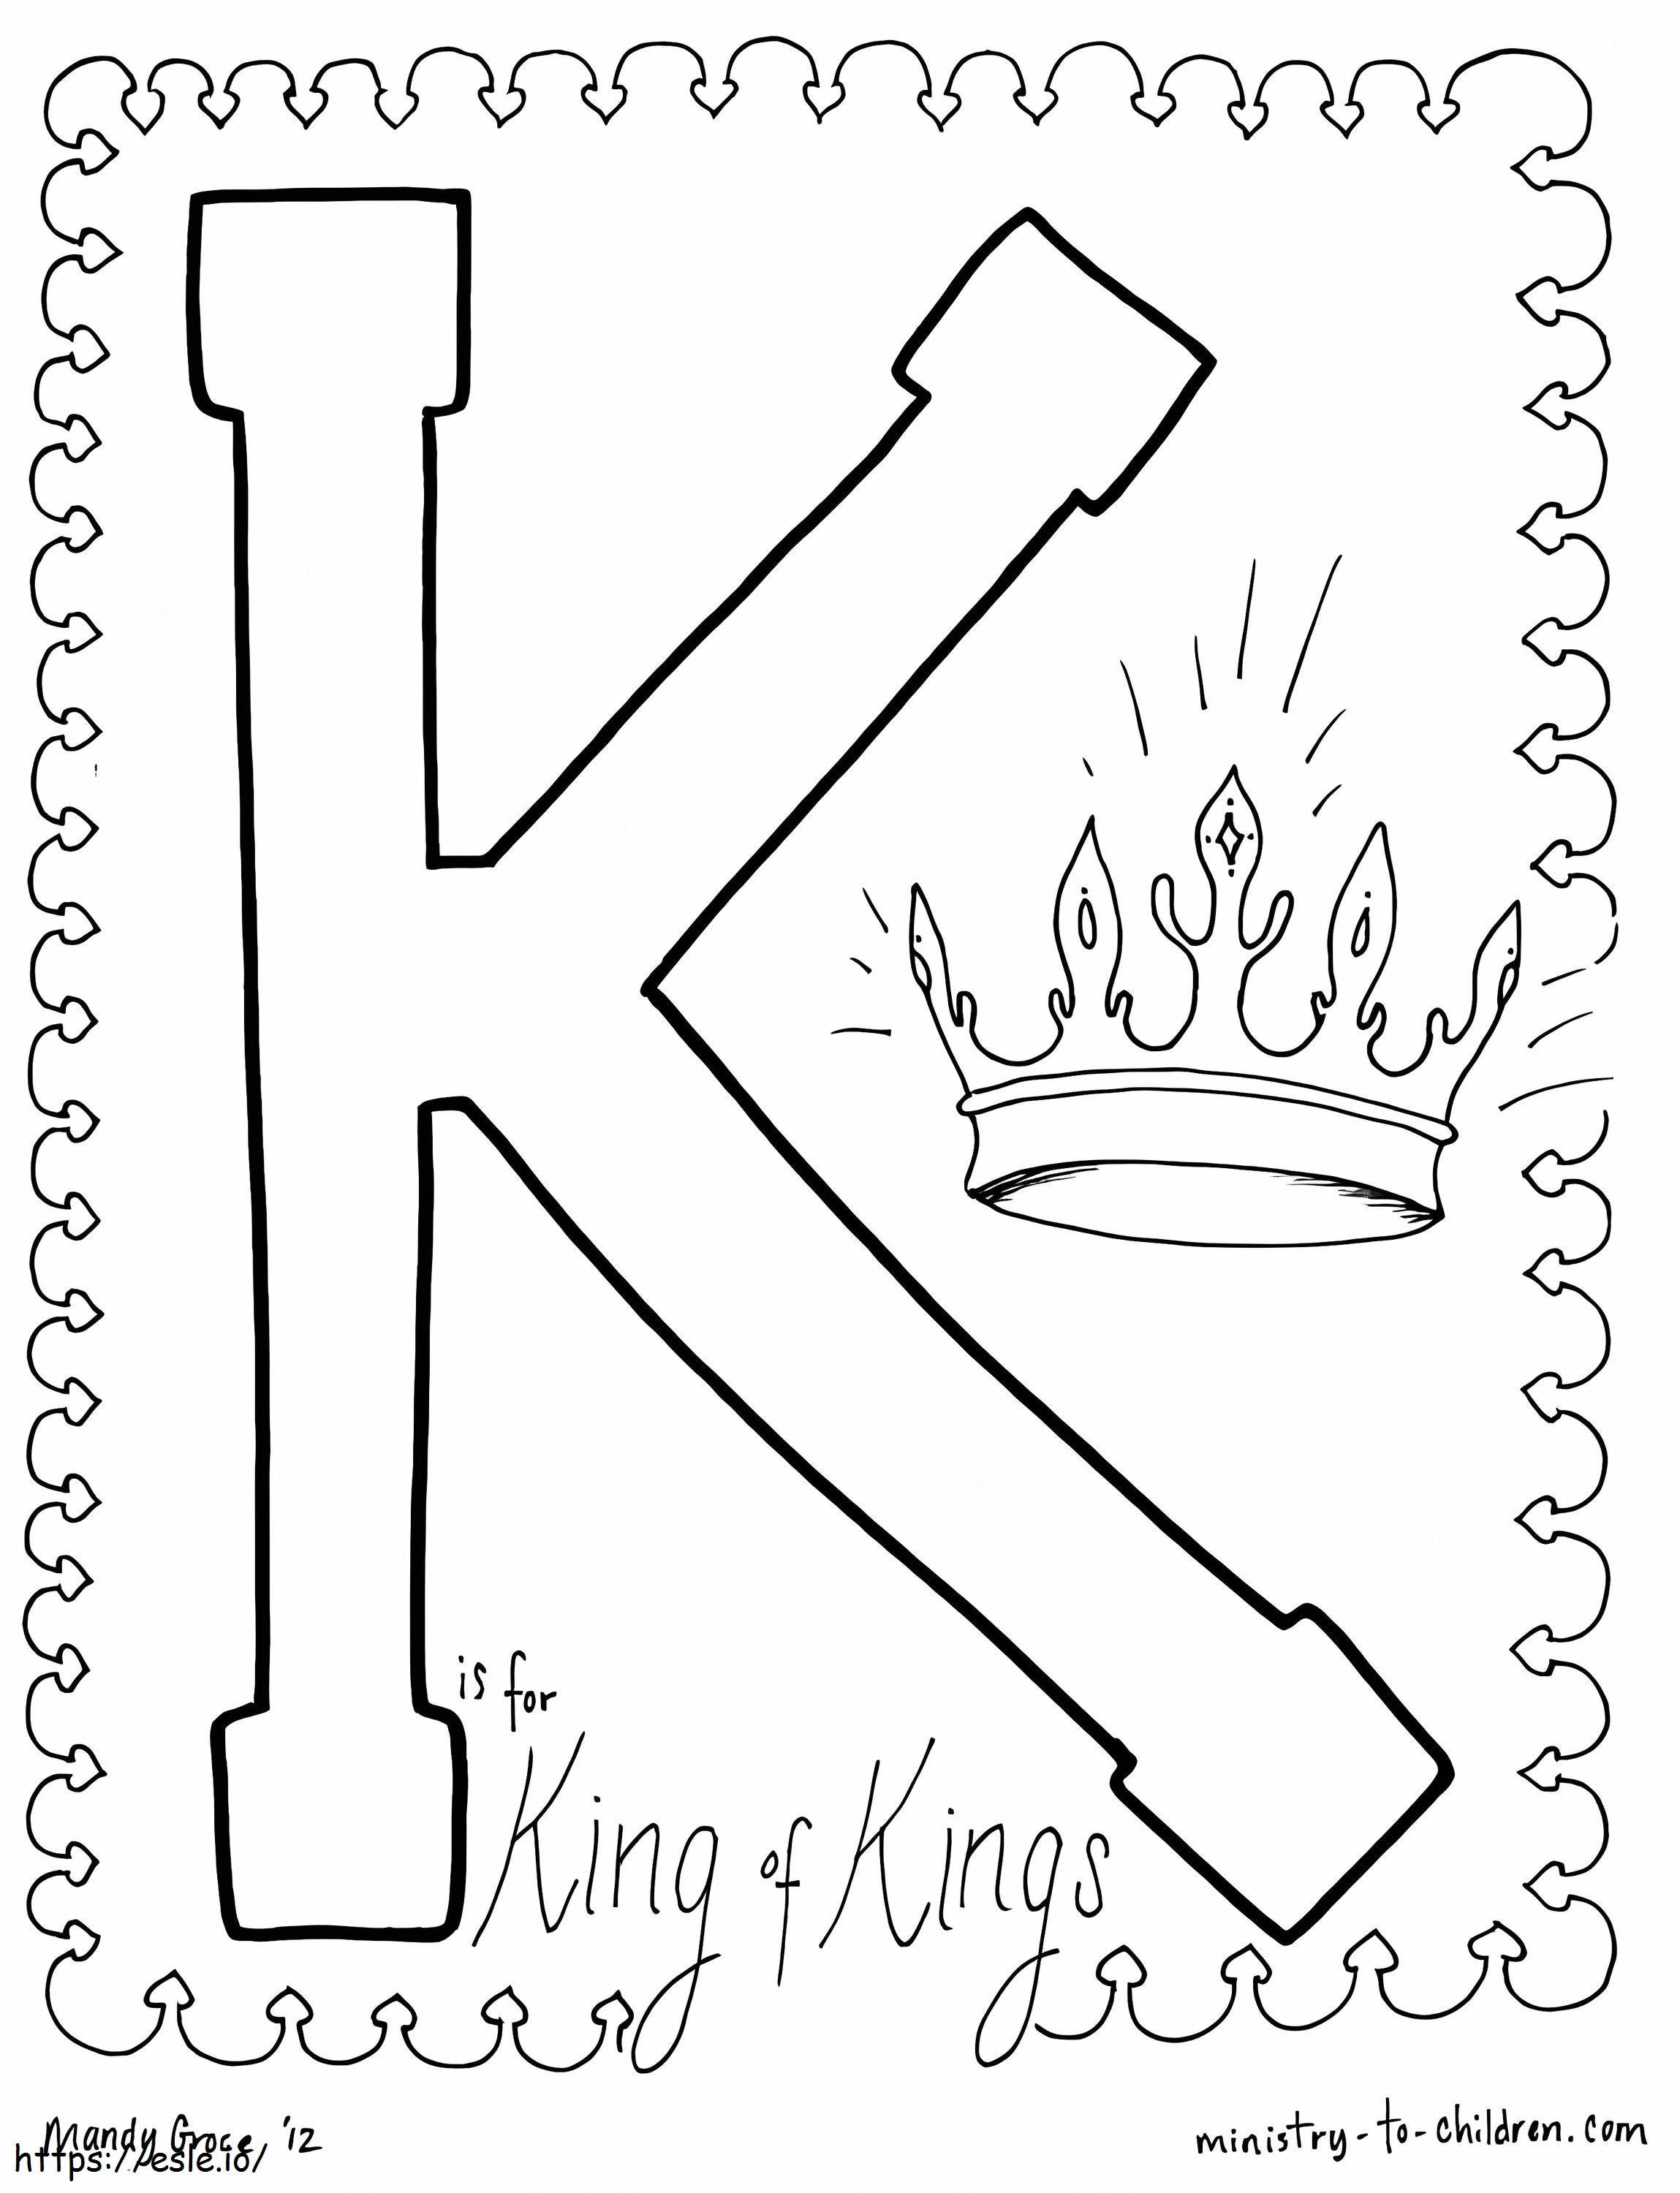 K este pentru Regele Regilor de colorat